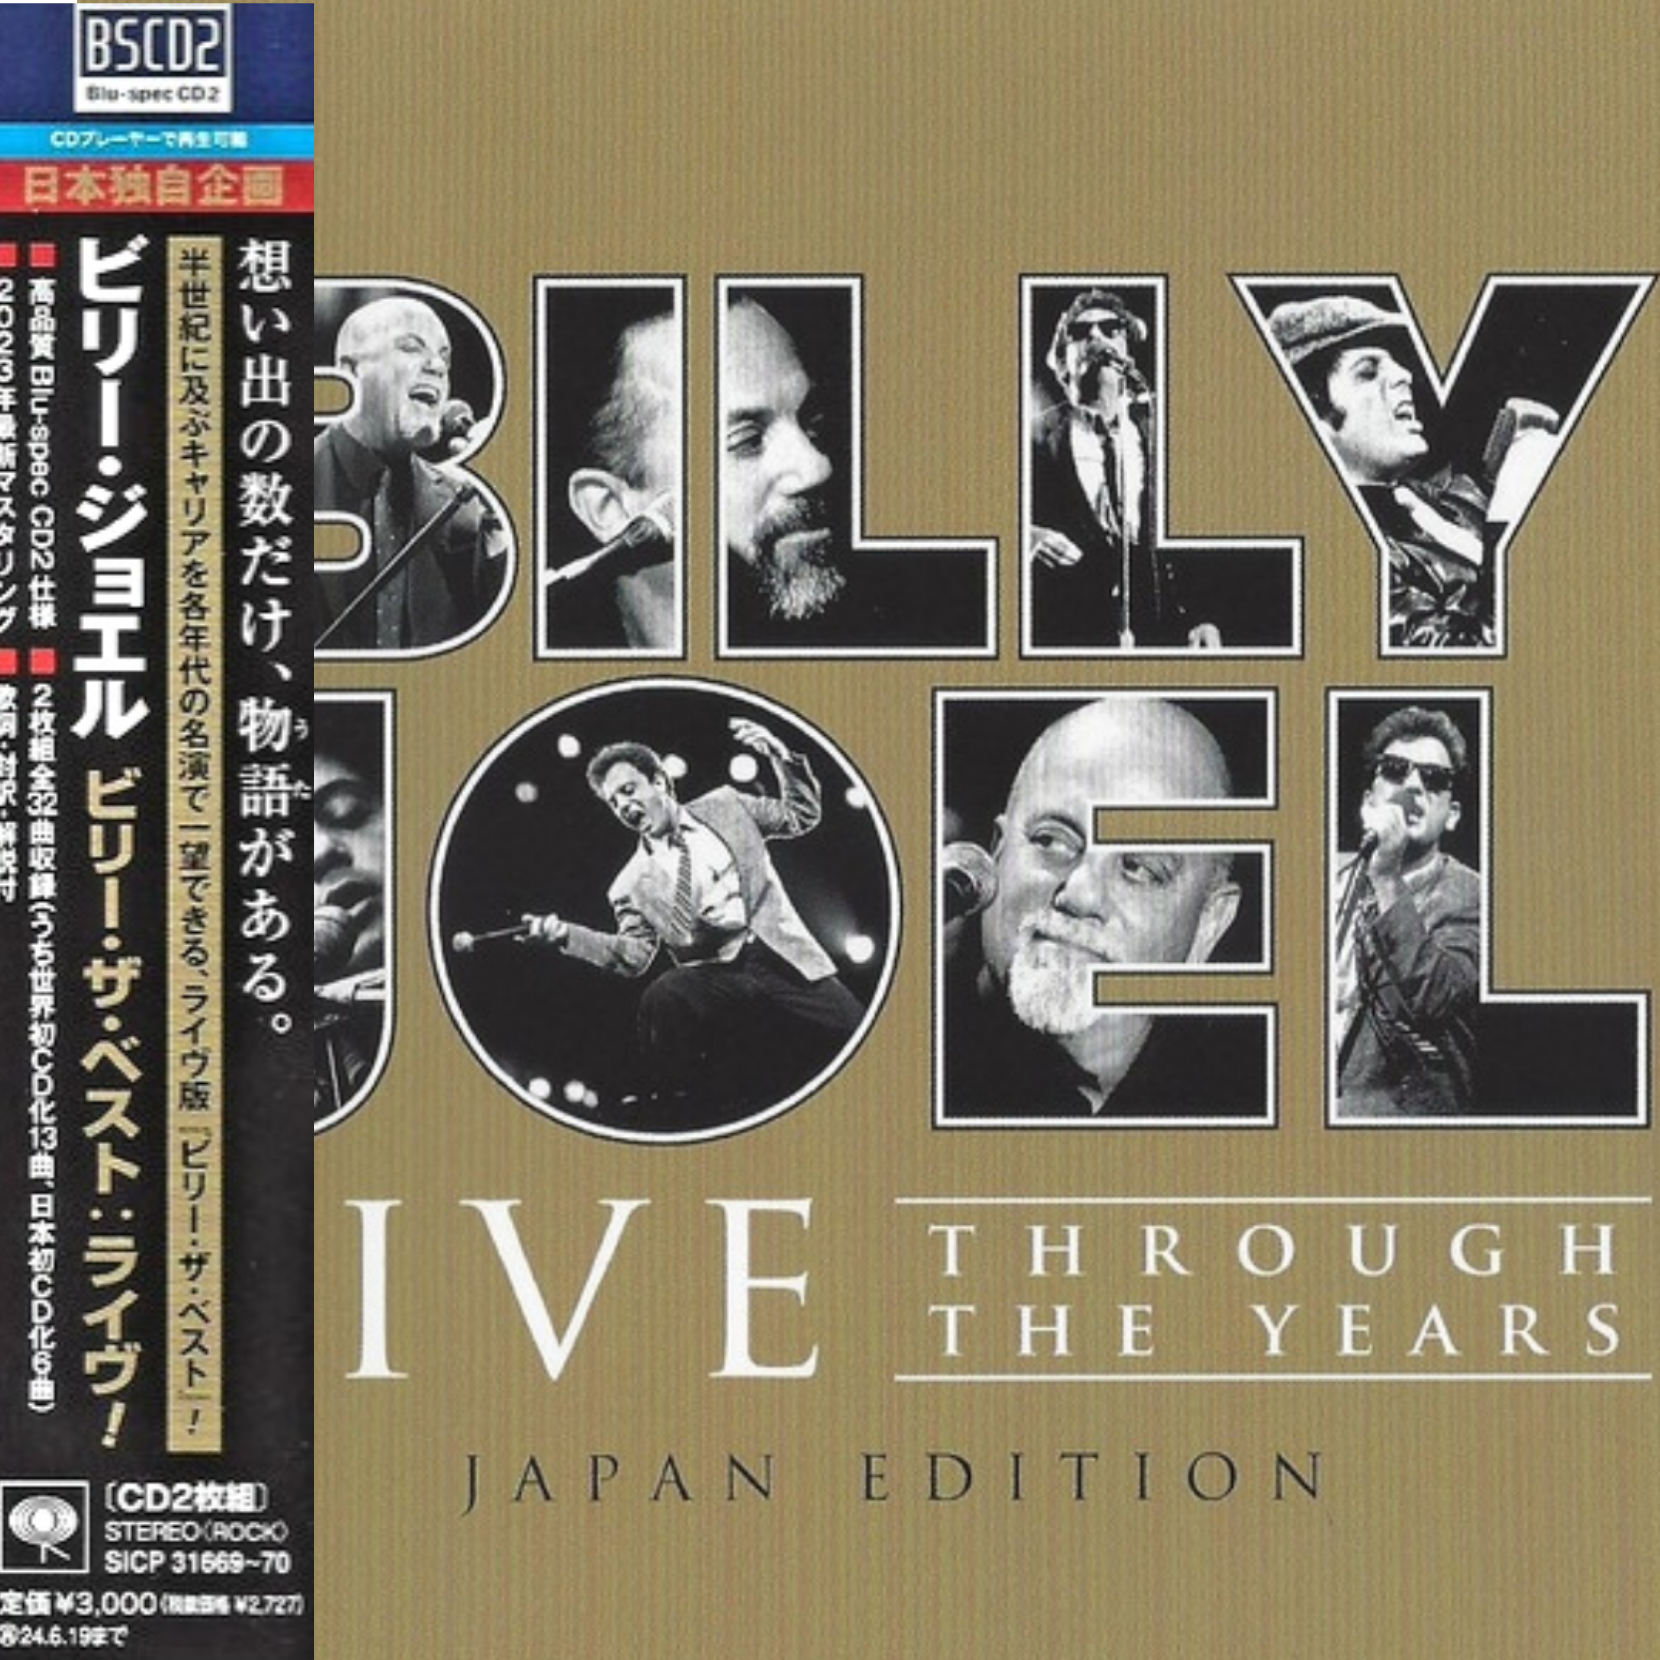 Billy_Joel_Japanese_CD_Bundle